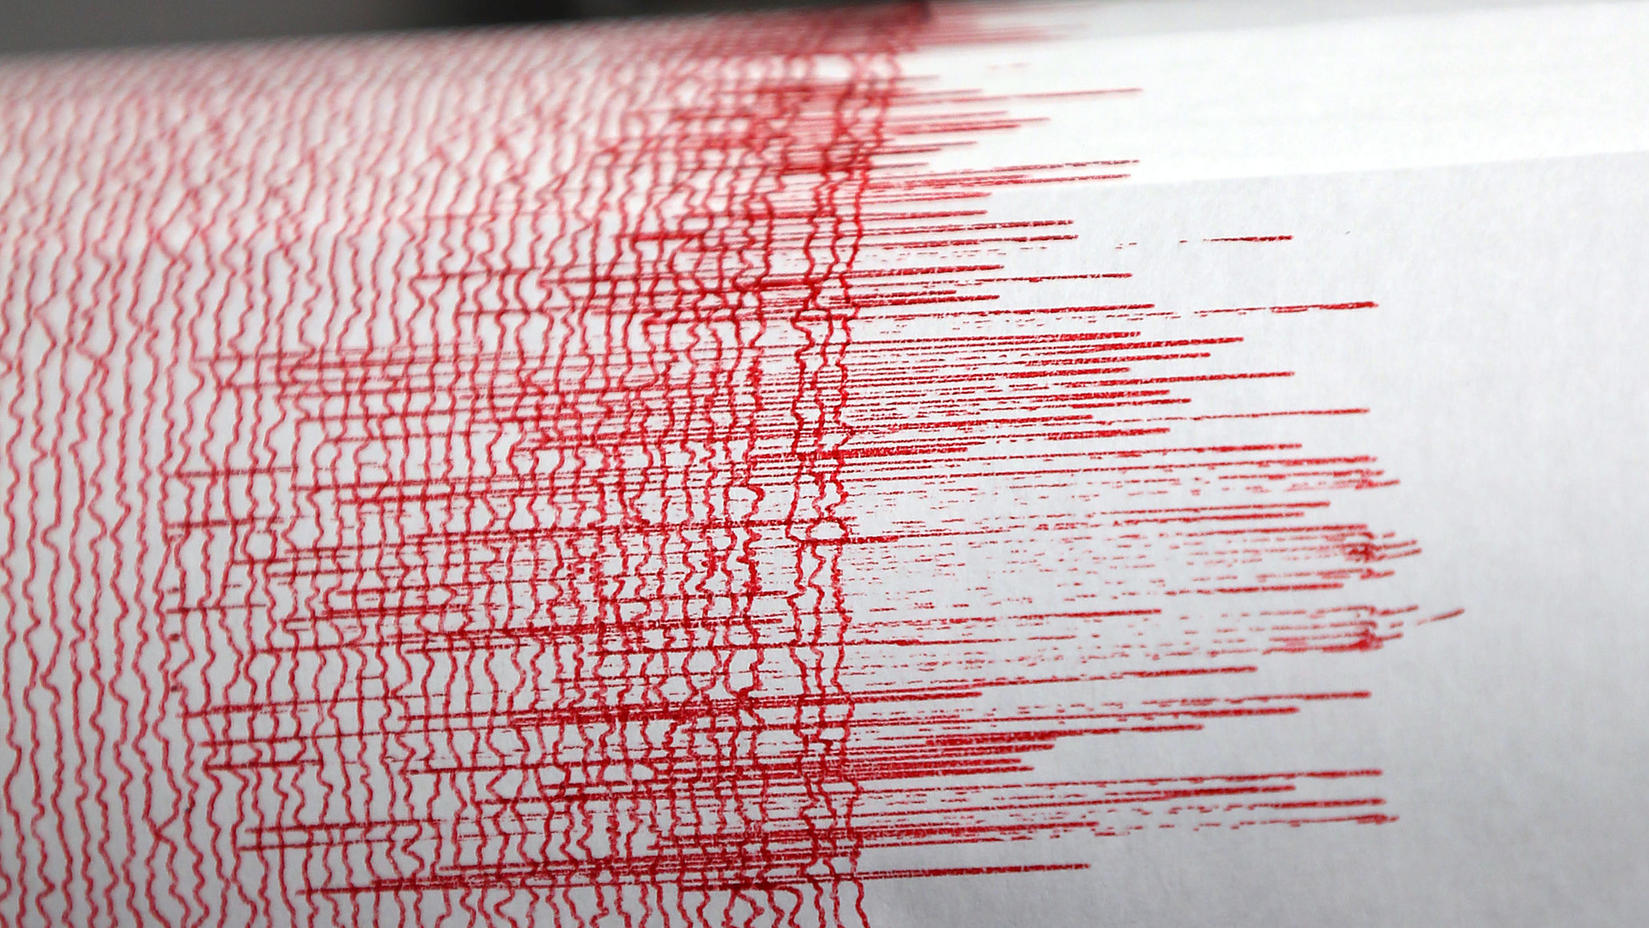 Erdbeben - Seismograph